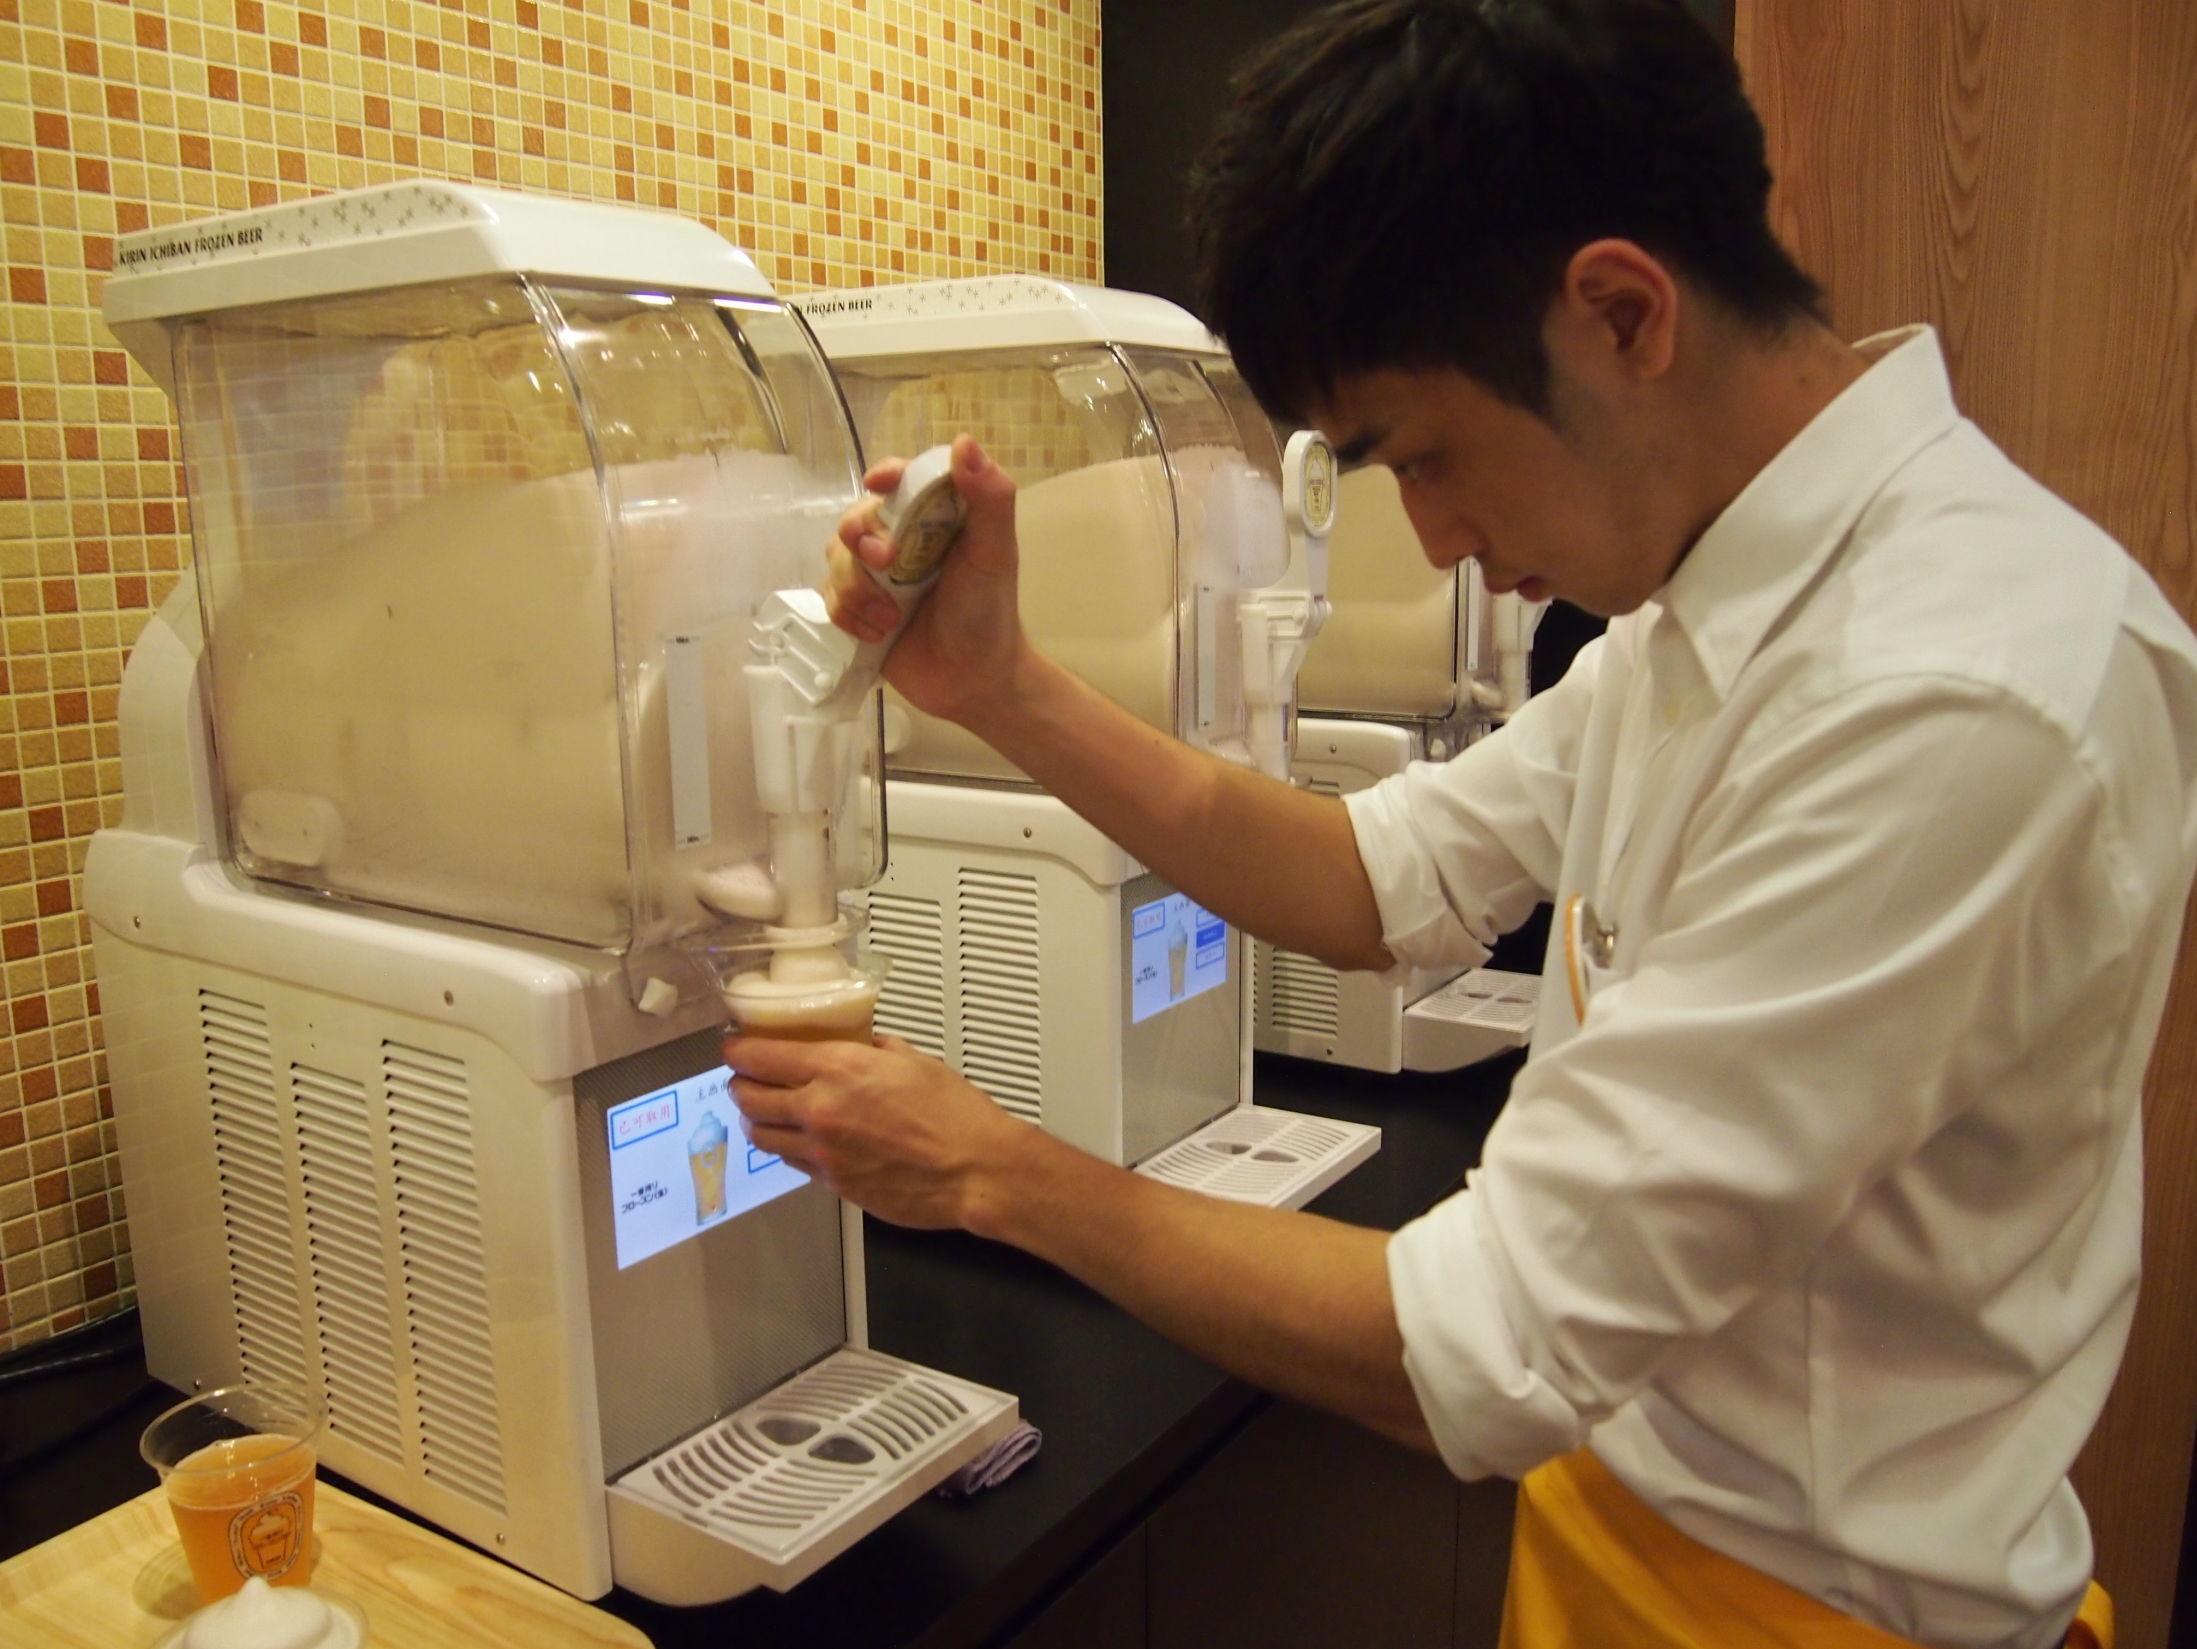 TA SELV: Tidligere fantes maskinen bare på restauranter og puber. Nå kan hvem som helst kjøpe fro-beer-maskinen. Foto: Kirin Ichiban